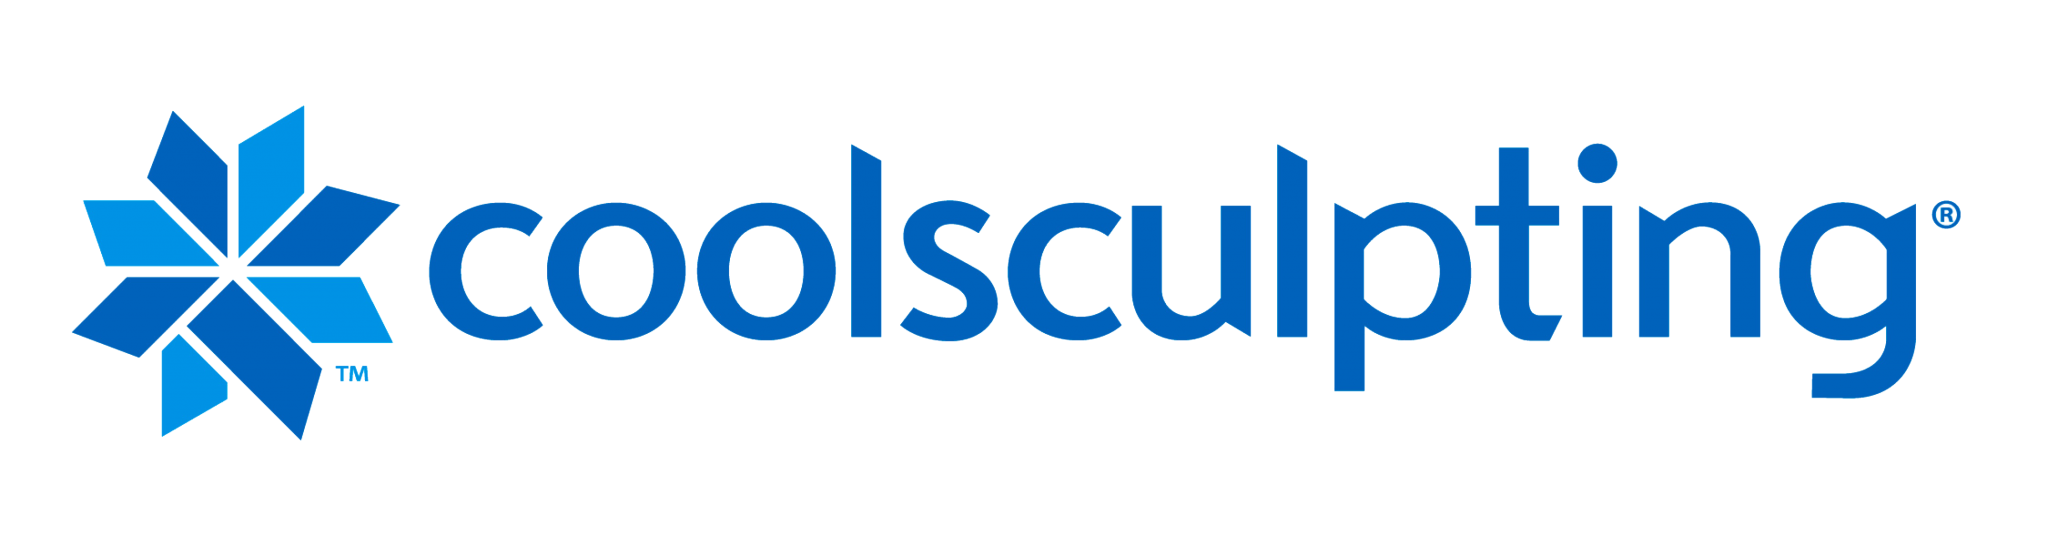 coolsculpting-logo-Blue.png